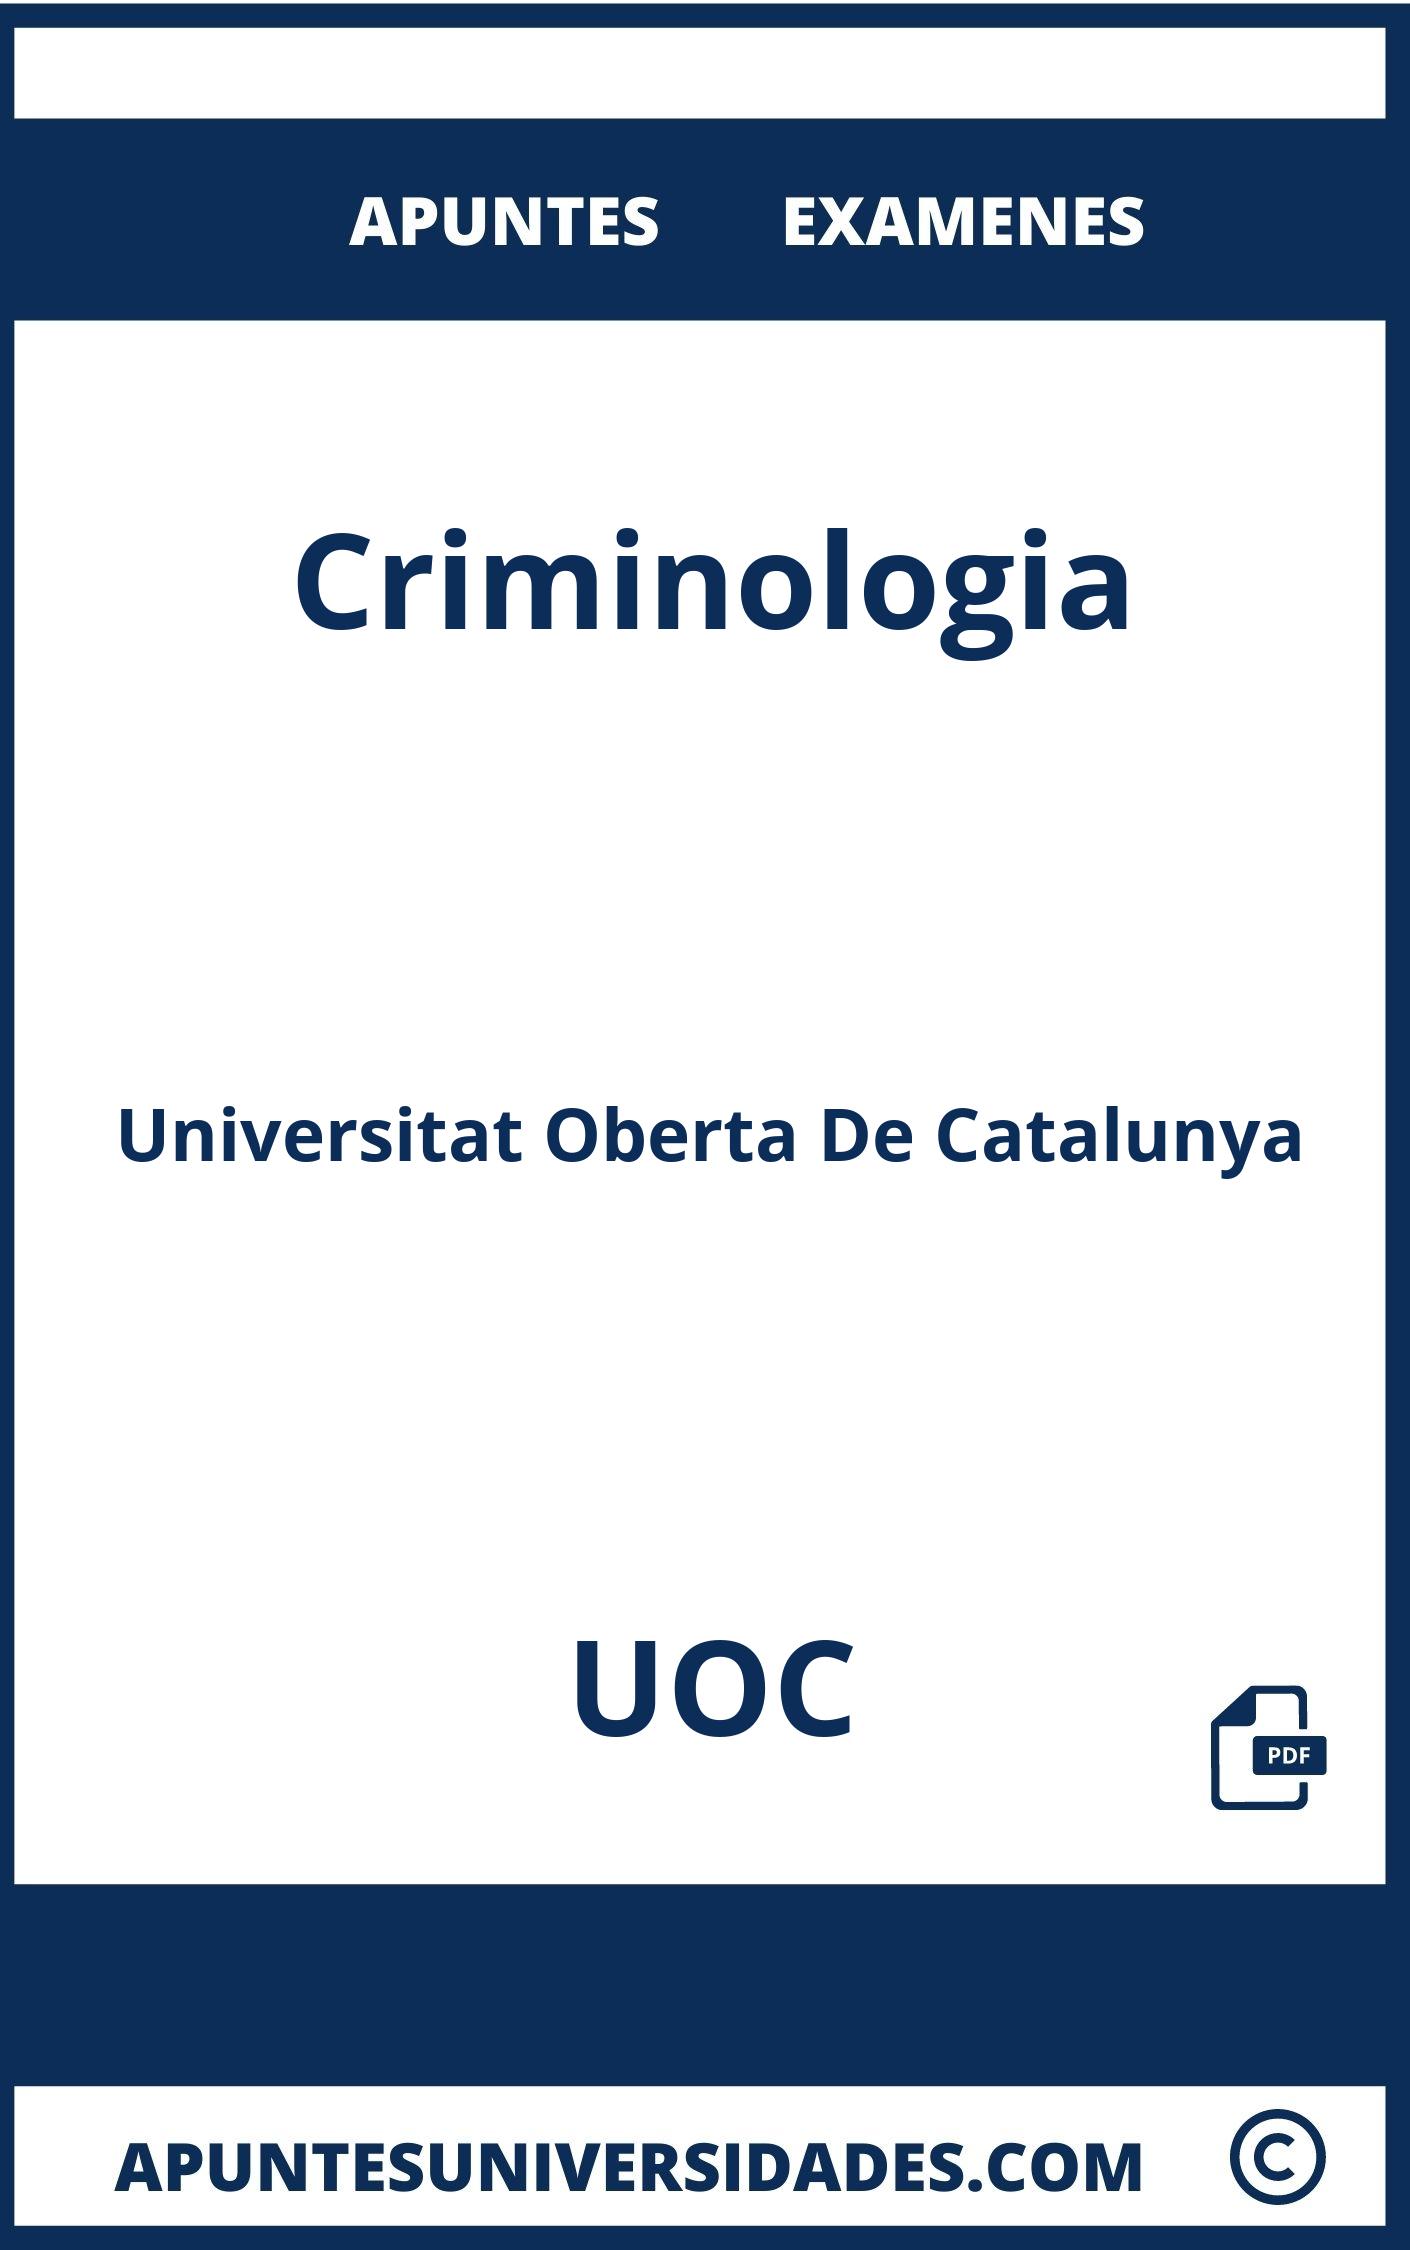 Apuntes Examenes Criminologia UOC